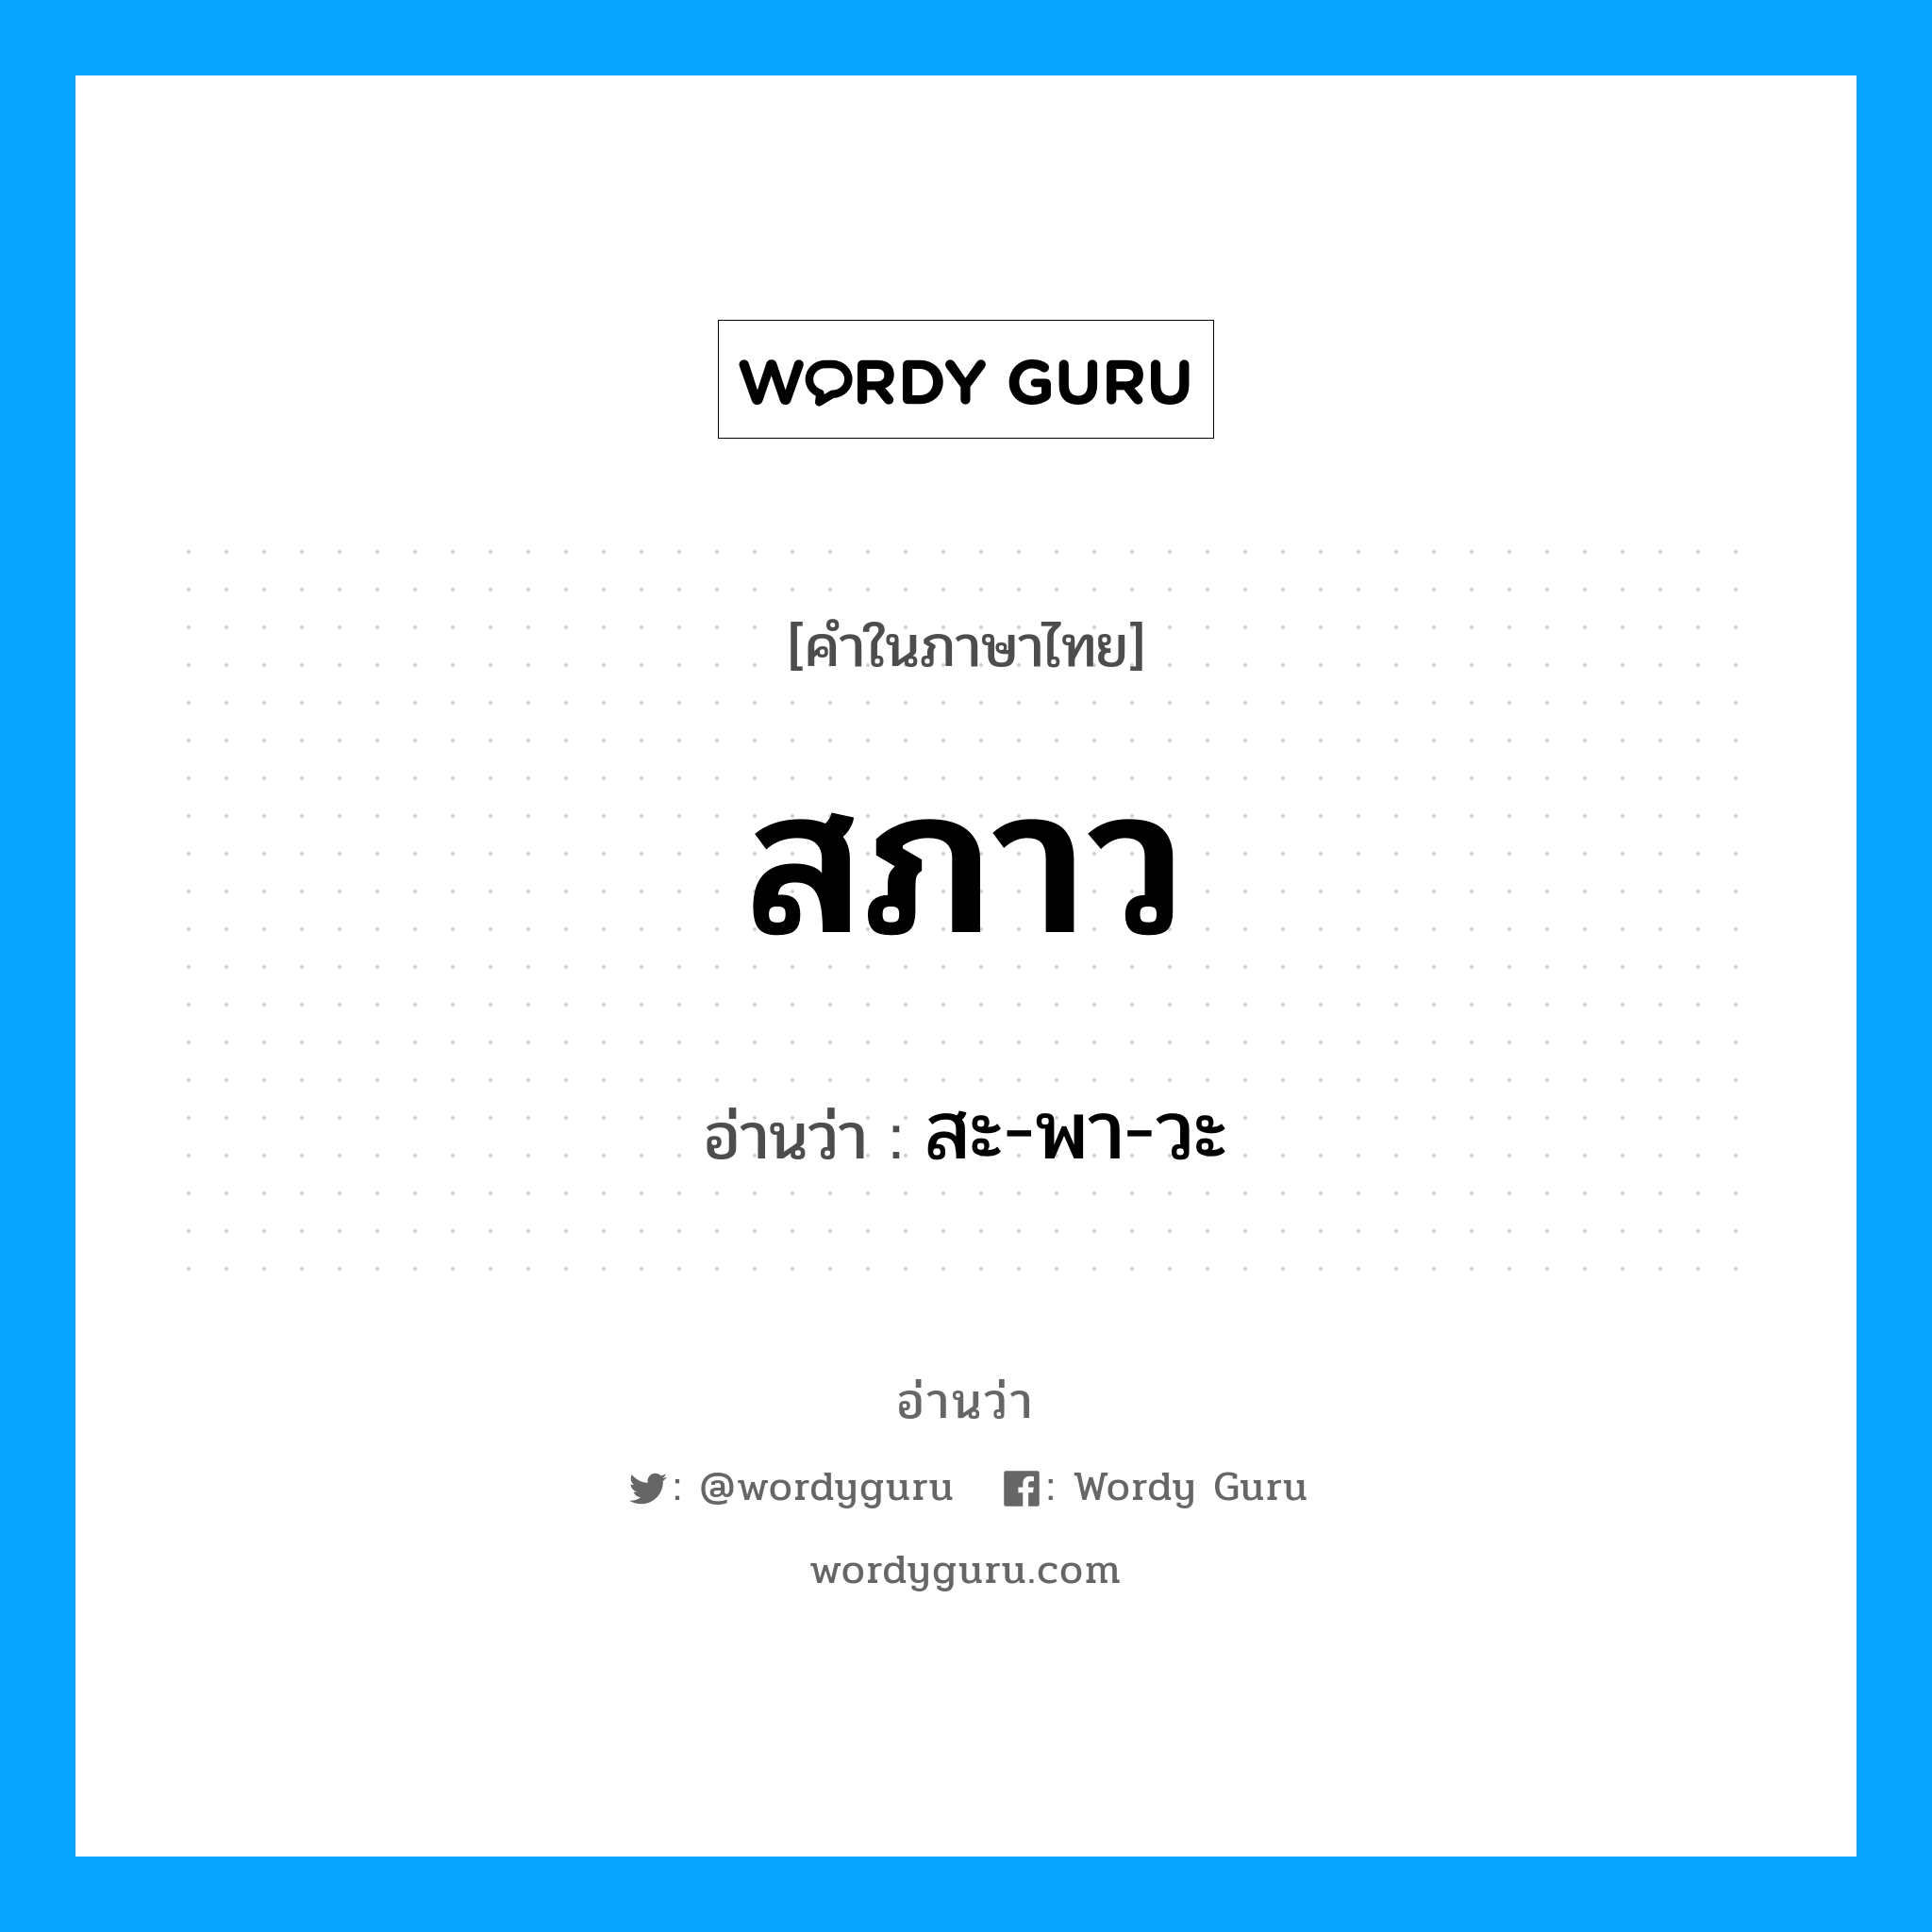 สะ-พา-วะ เป็นคำอ่านของคำไหน?, คำในภาษาไทย สะ-พา-วะ อ่านว่า สภาว